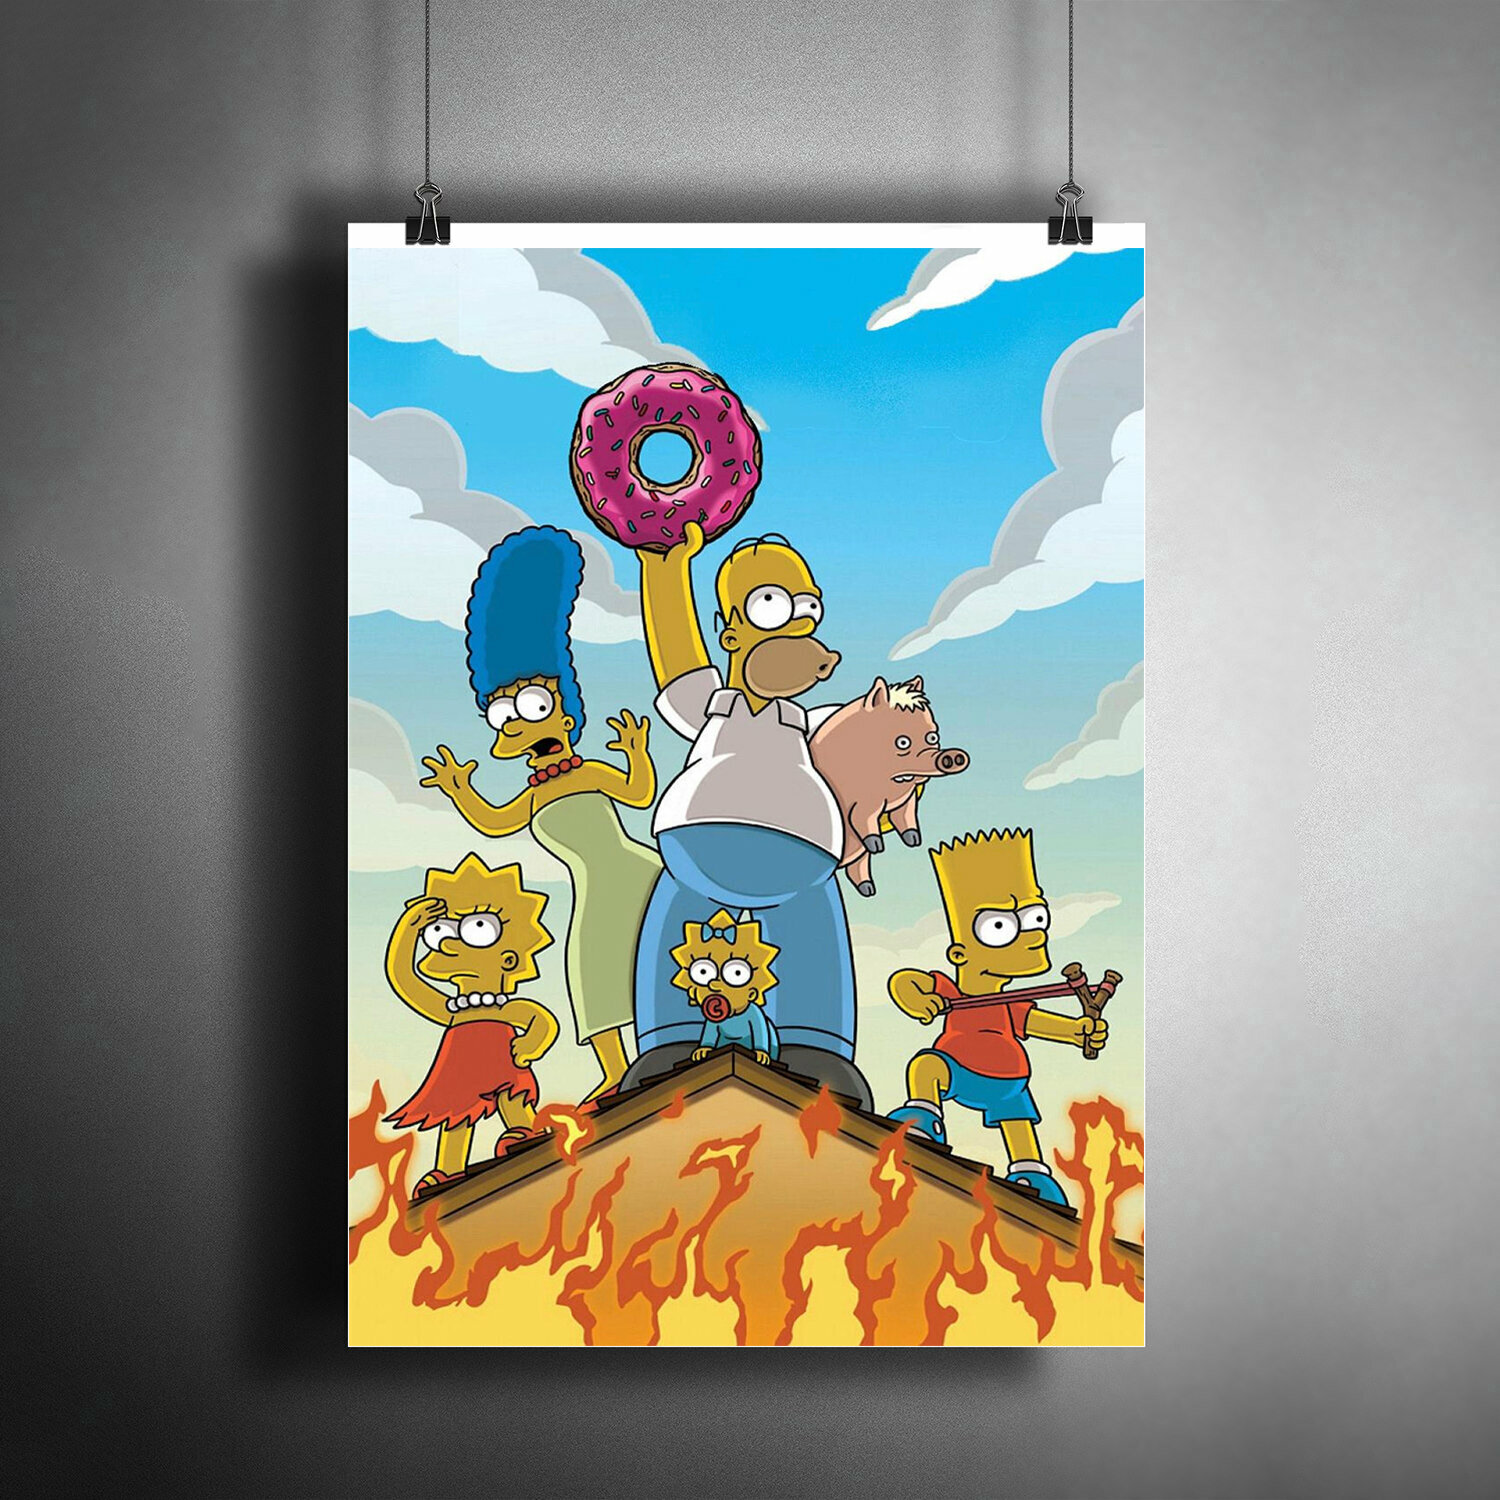 Постер для интерьера: Симпсоны (The Simpsons)/A3(297x420 мм)